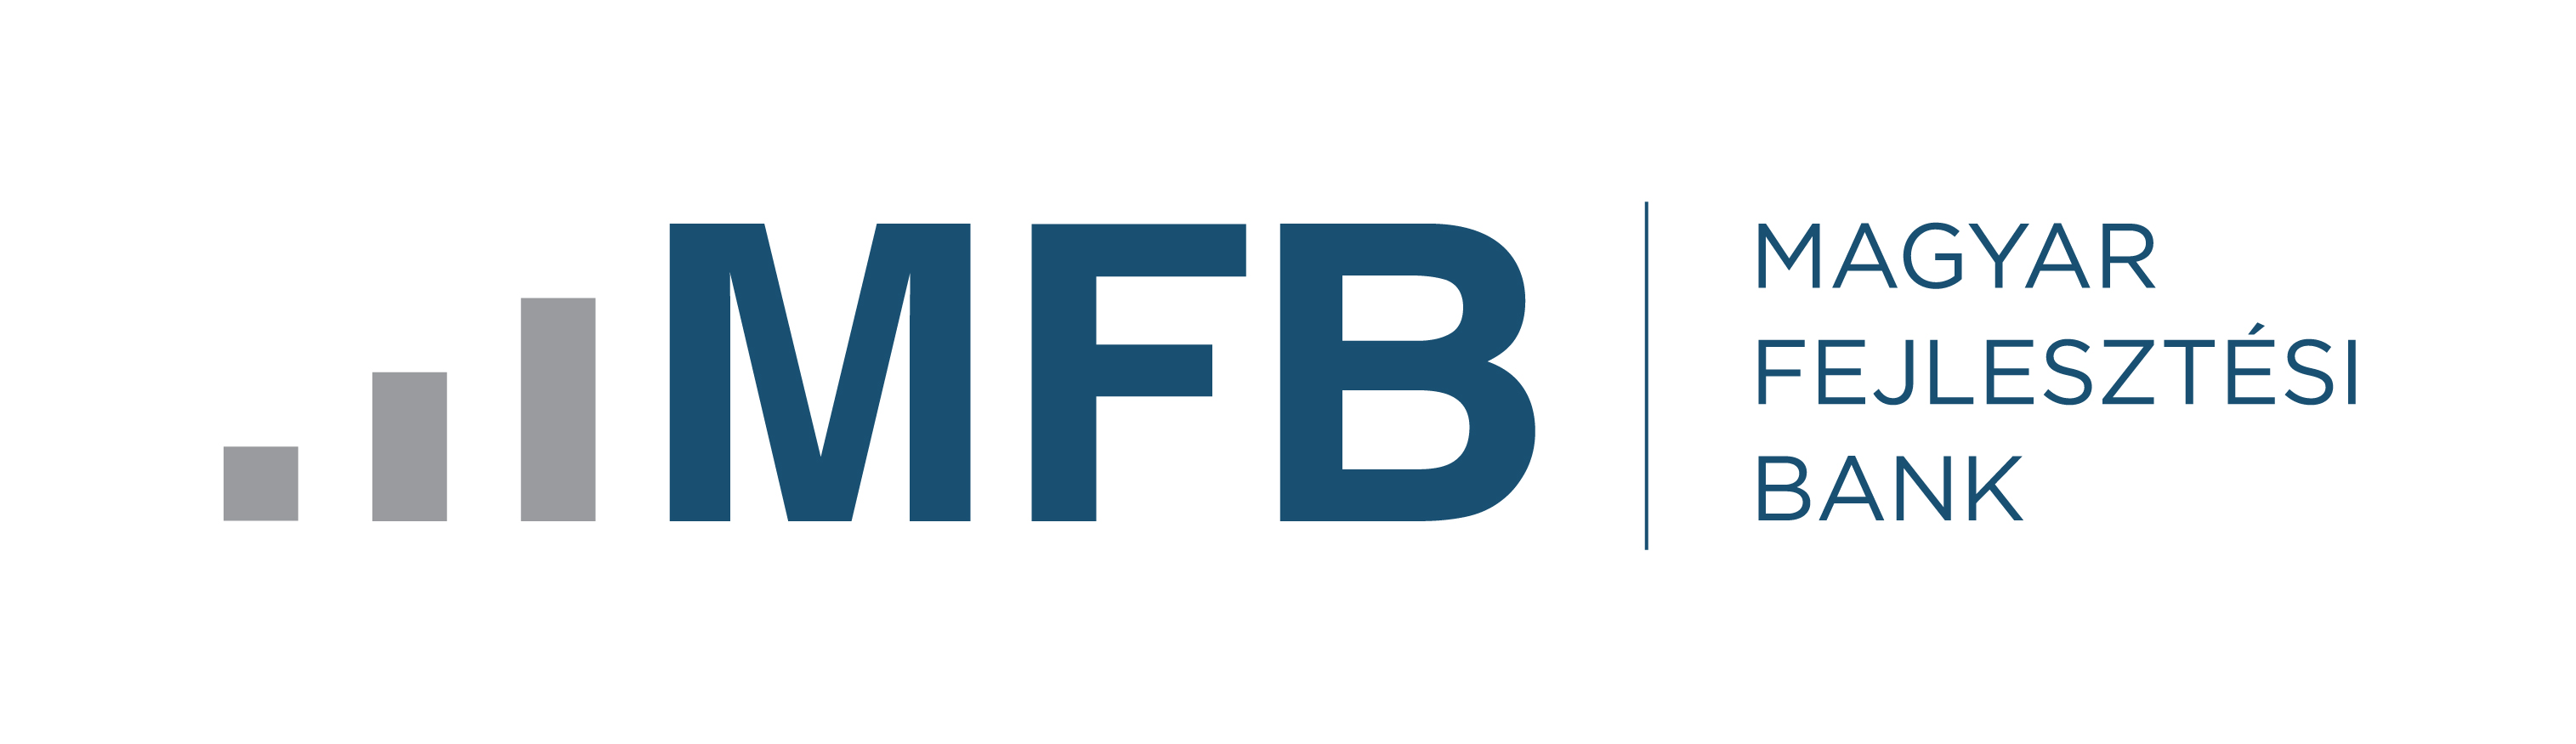 mfb_logo_2017_1.jpg